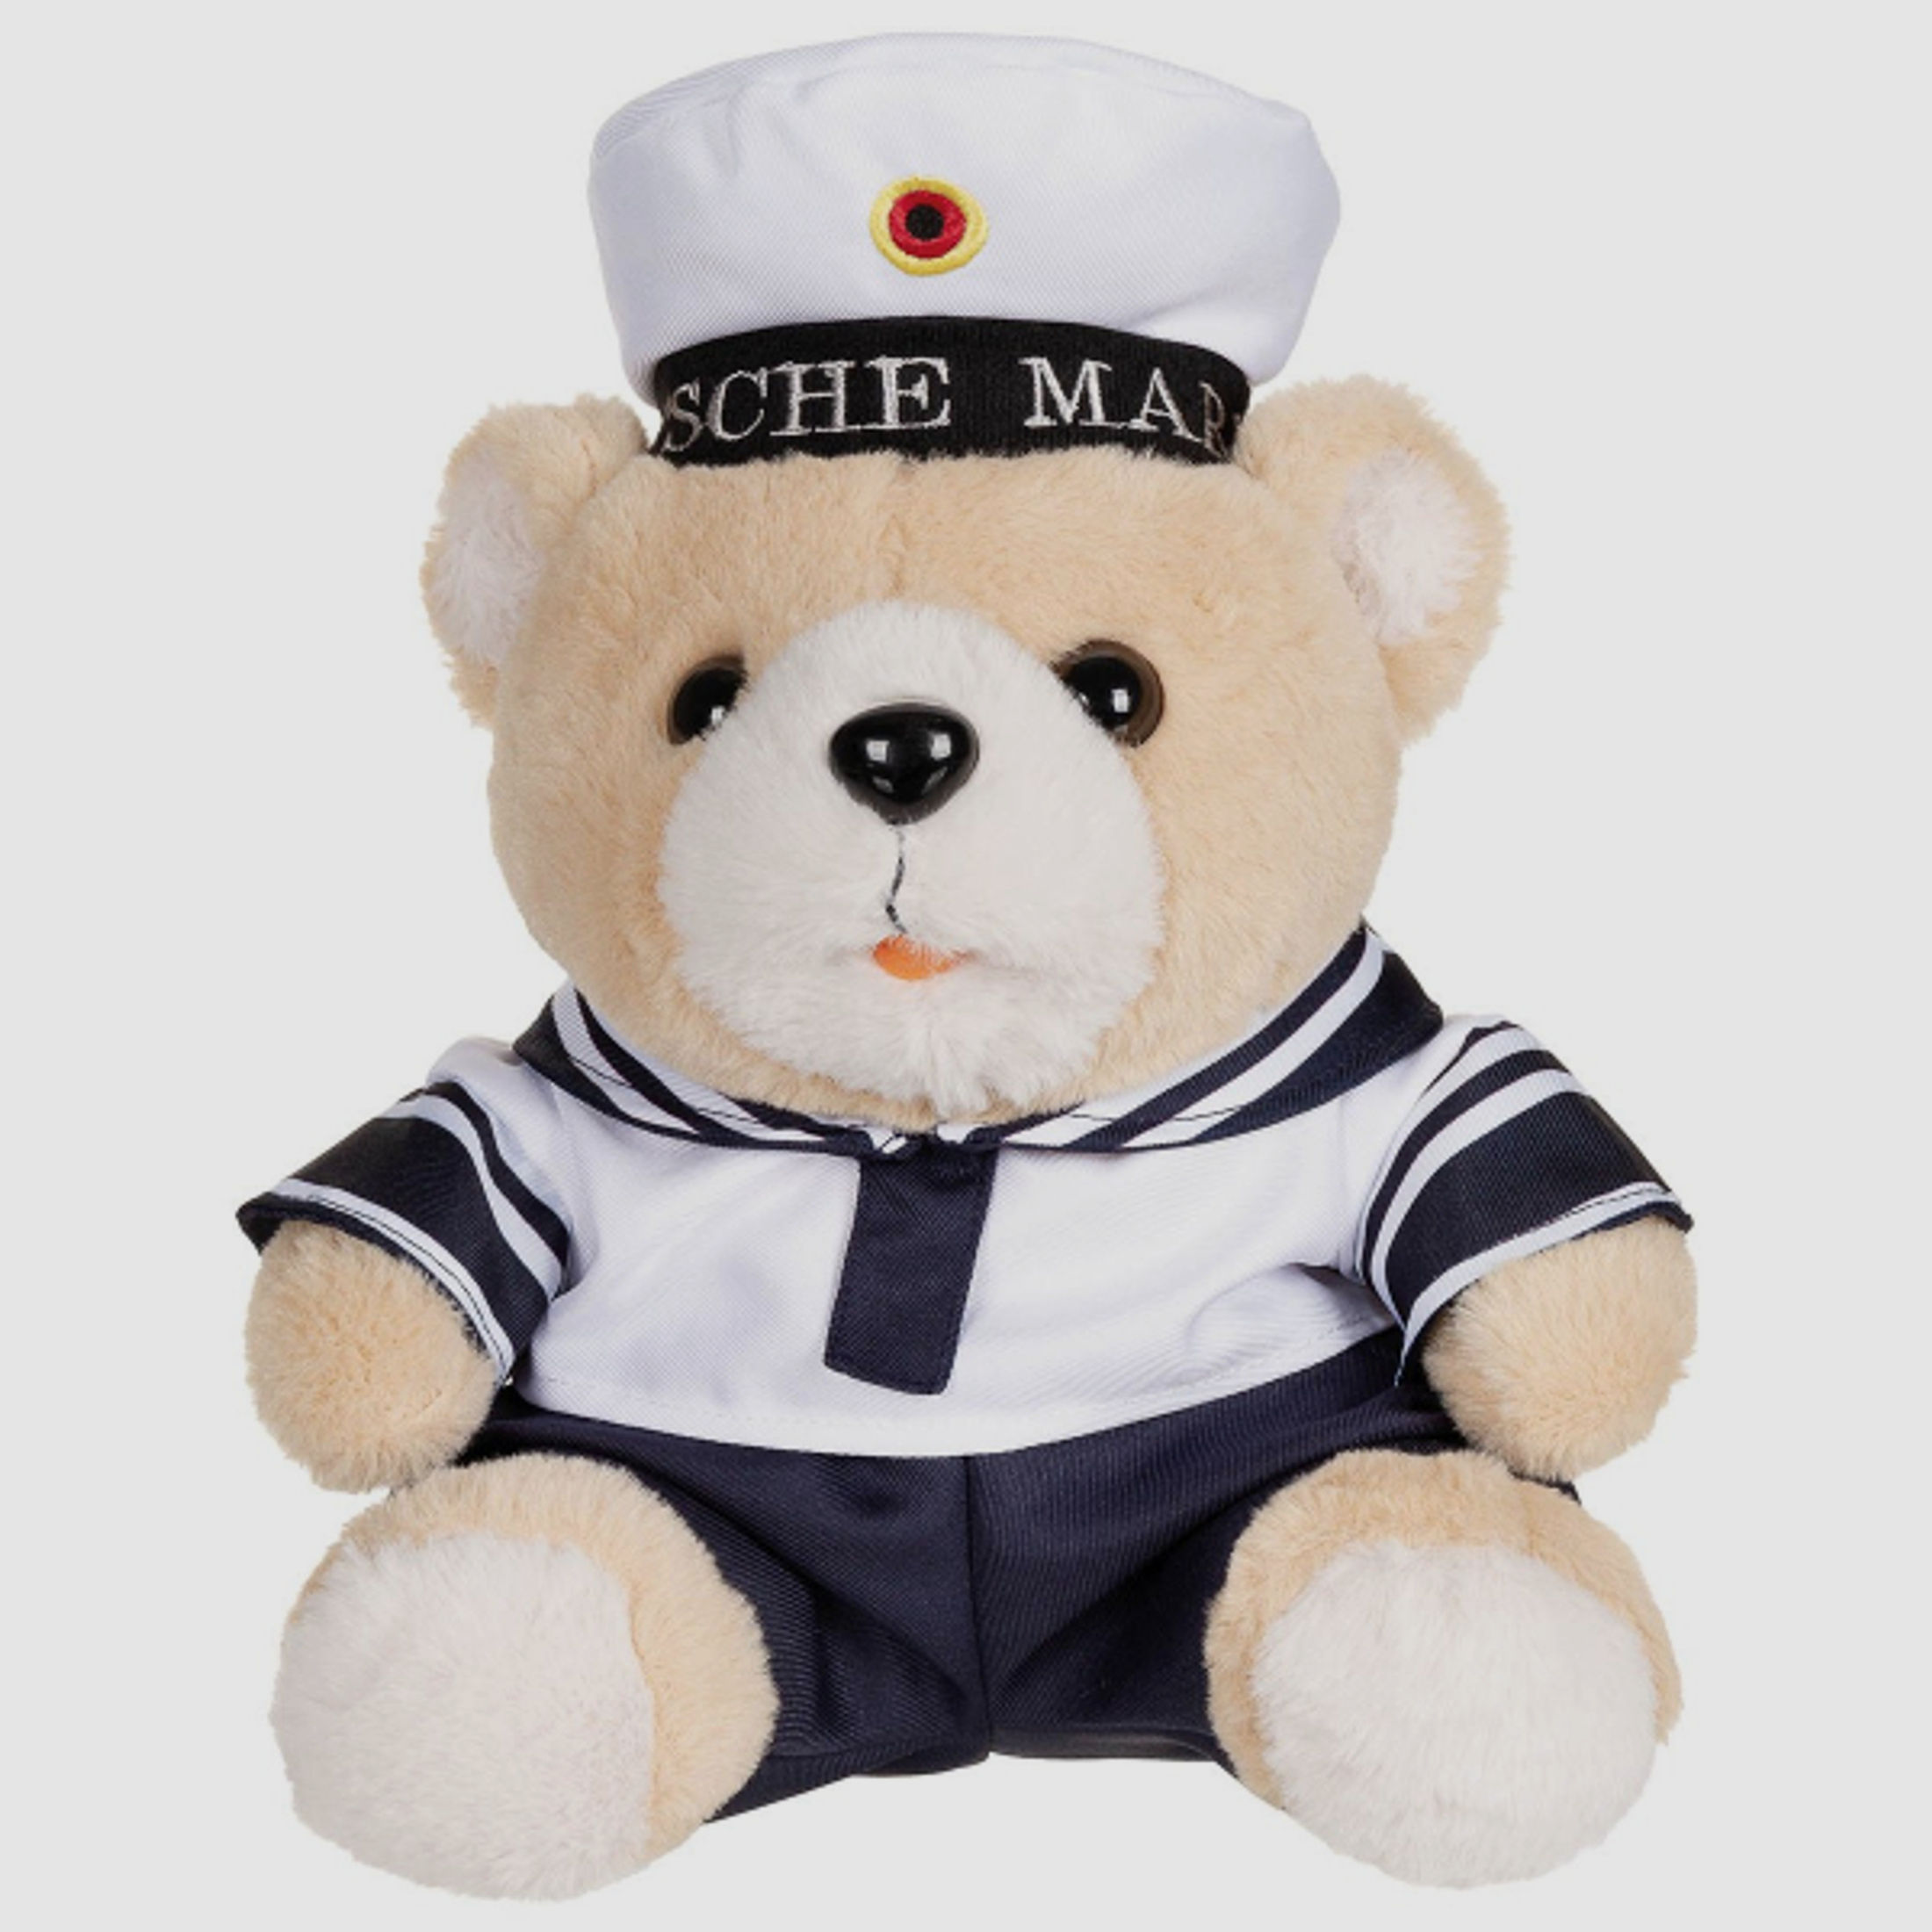 Teddybär mit Bundeswehr Marine Anzug / Uniform + Mütze in Blau / Weiss - ca. 28 cm hoch